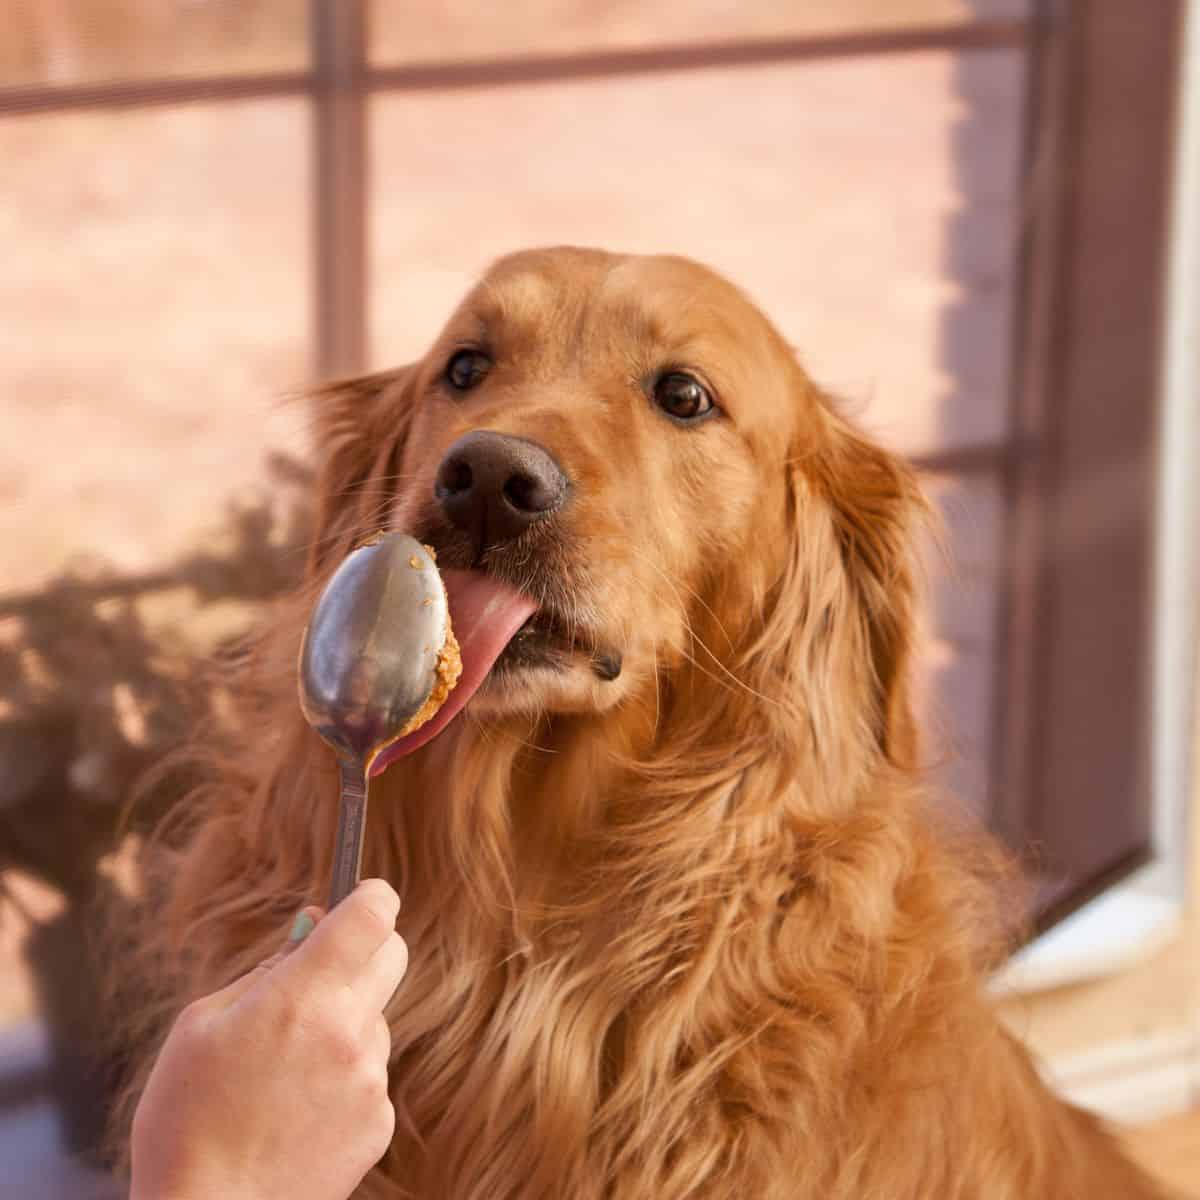 Golden Retriever eating peanut butter off a spoon.